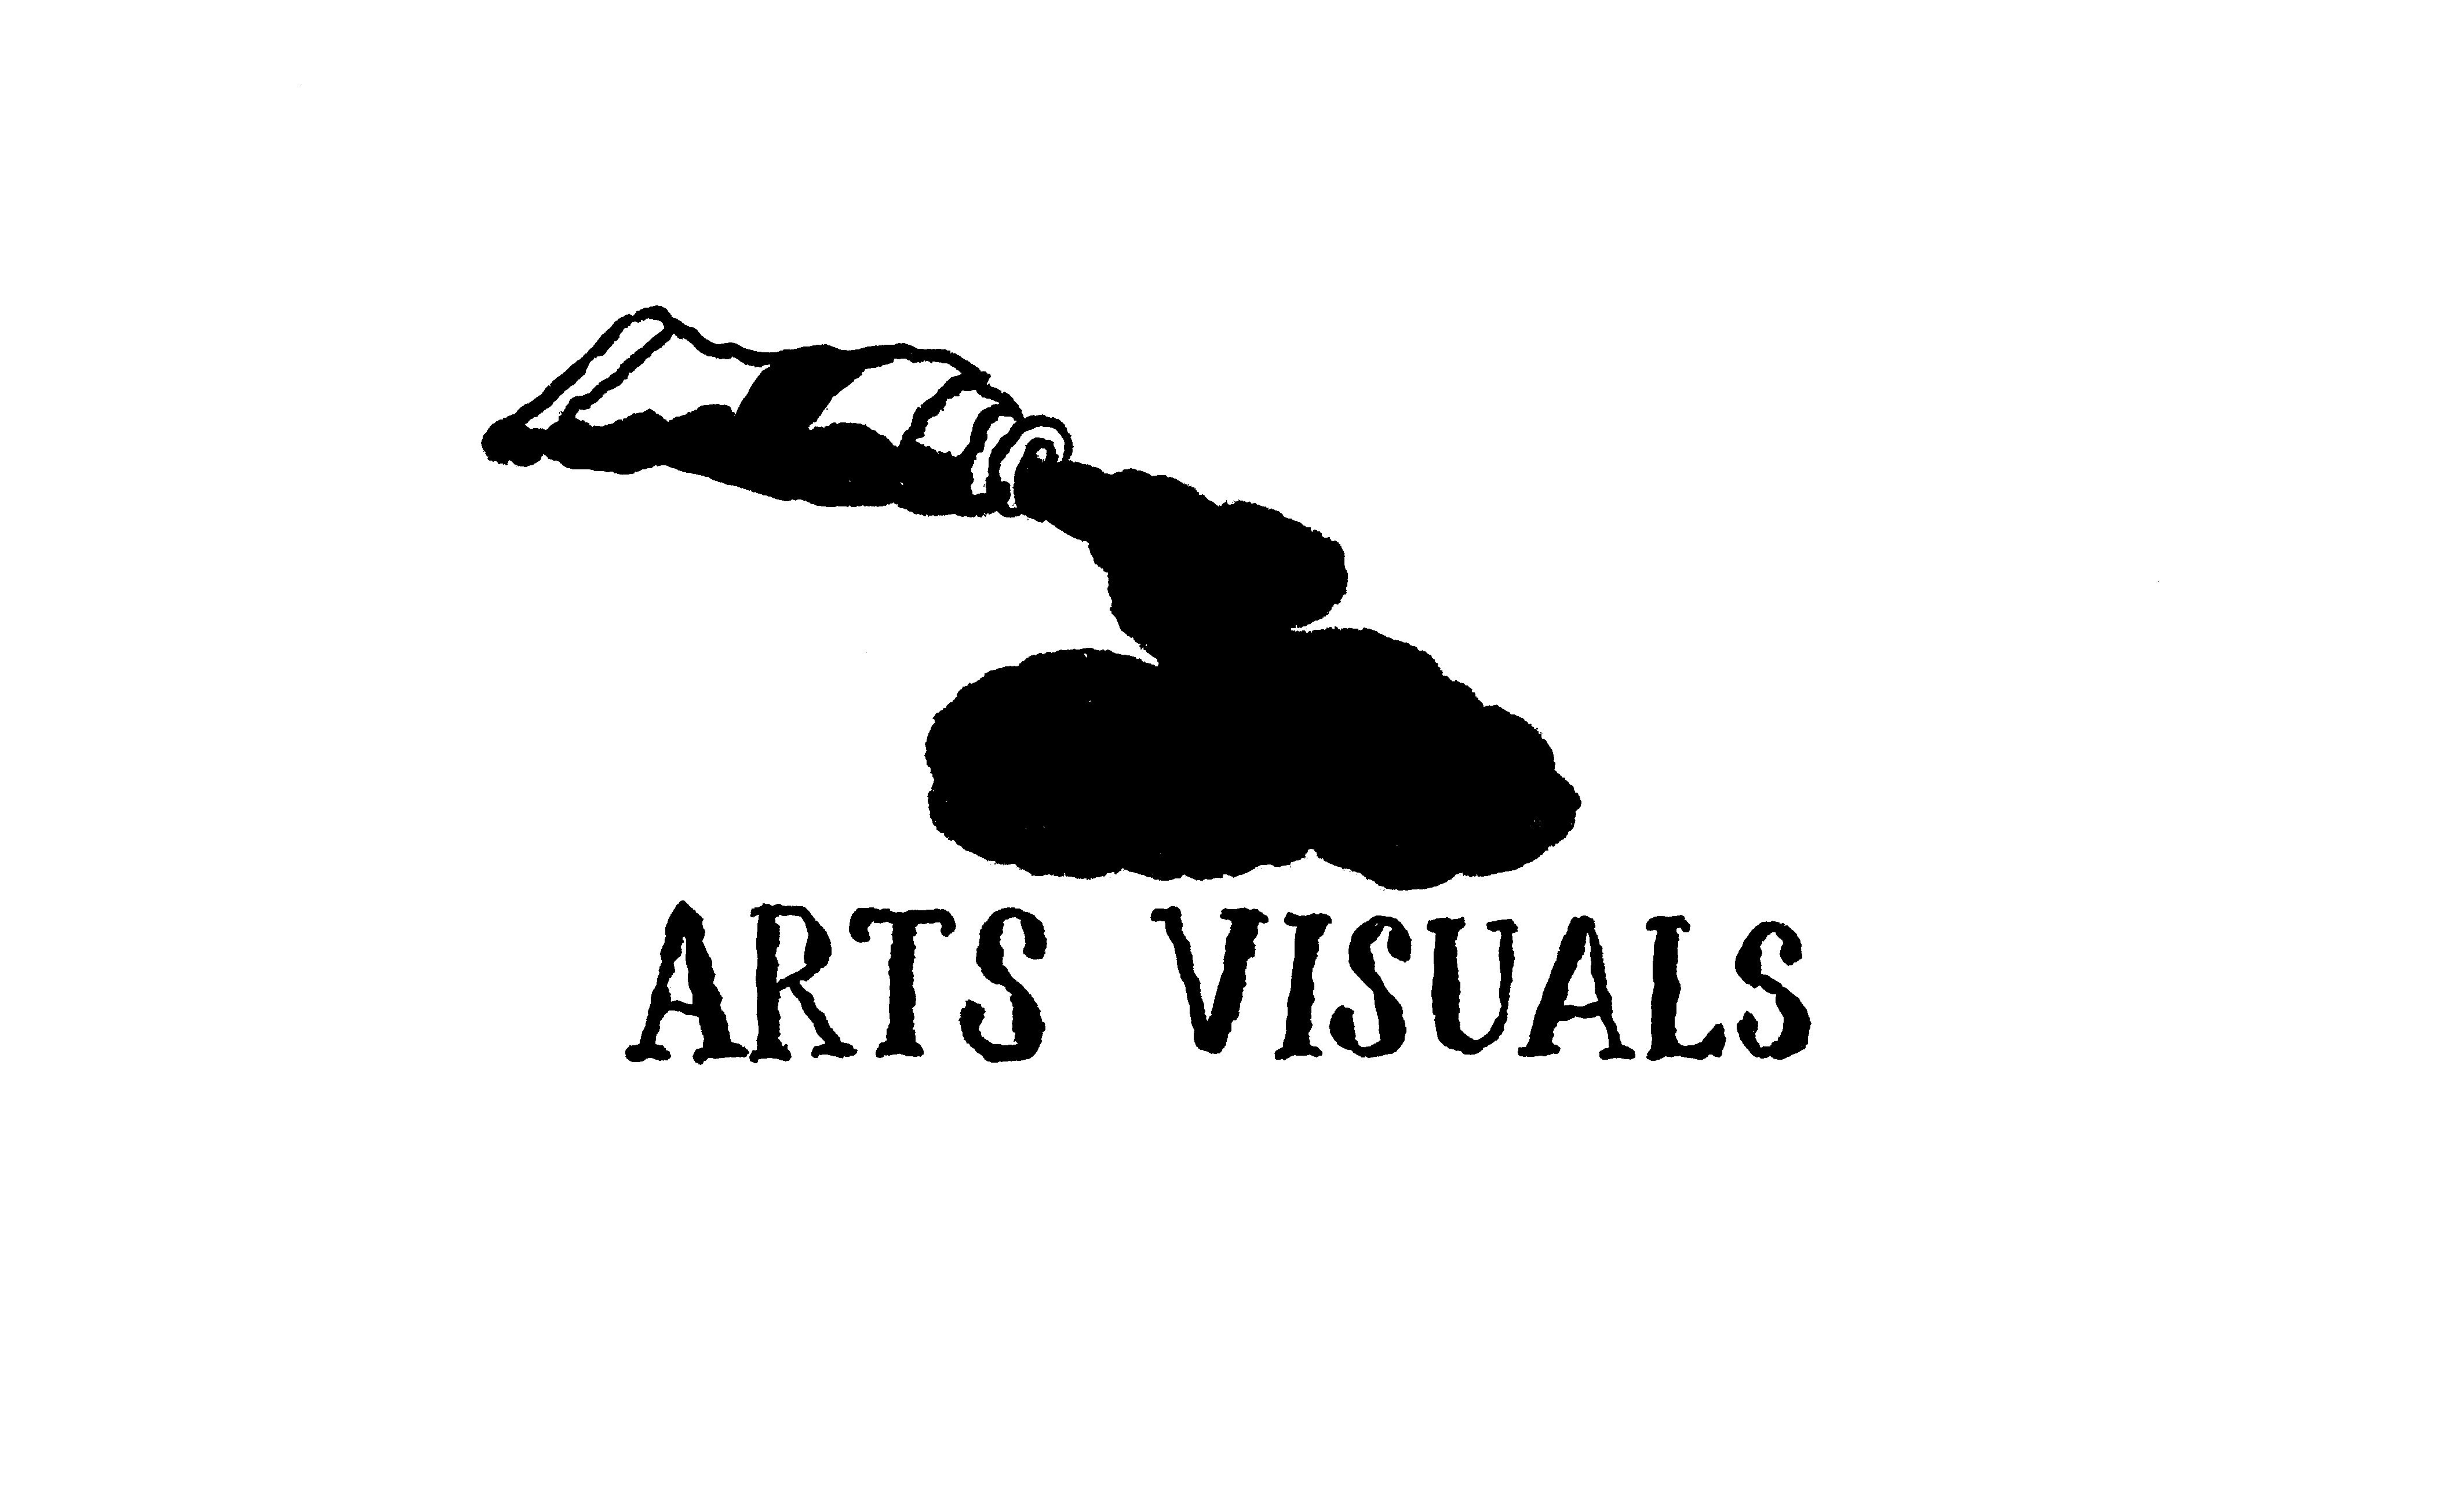 Arts visuals